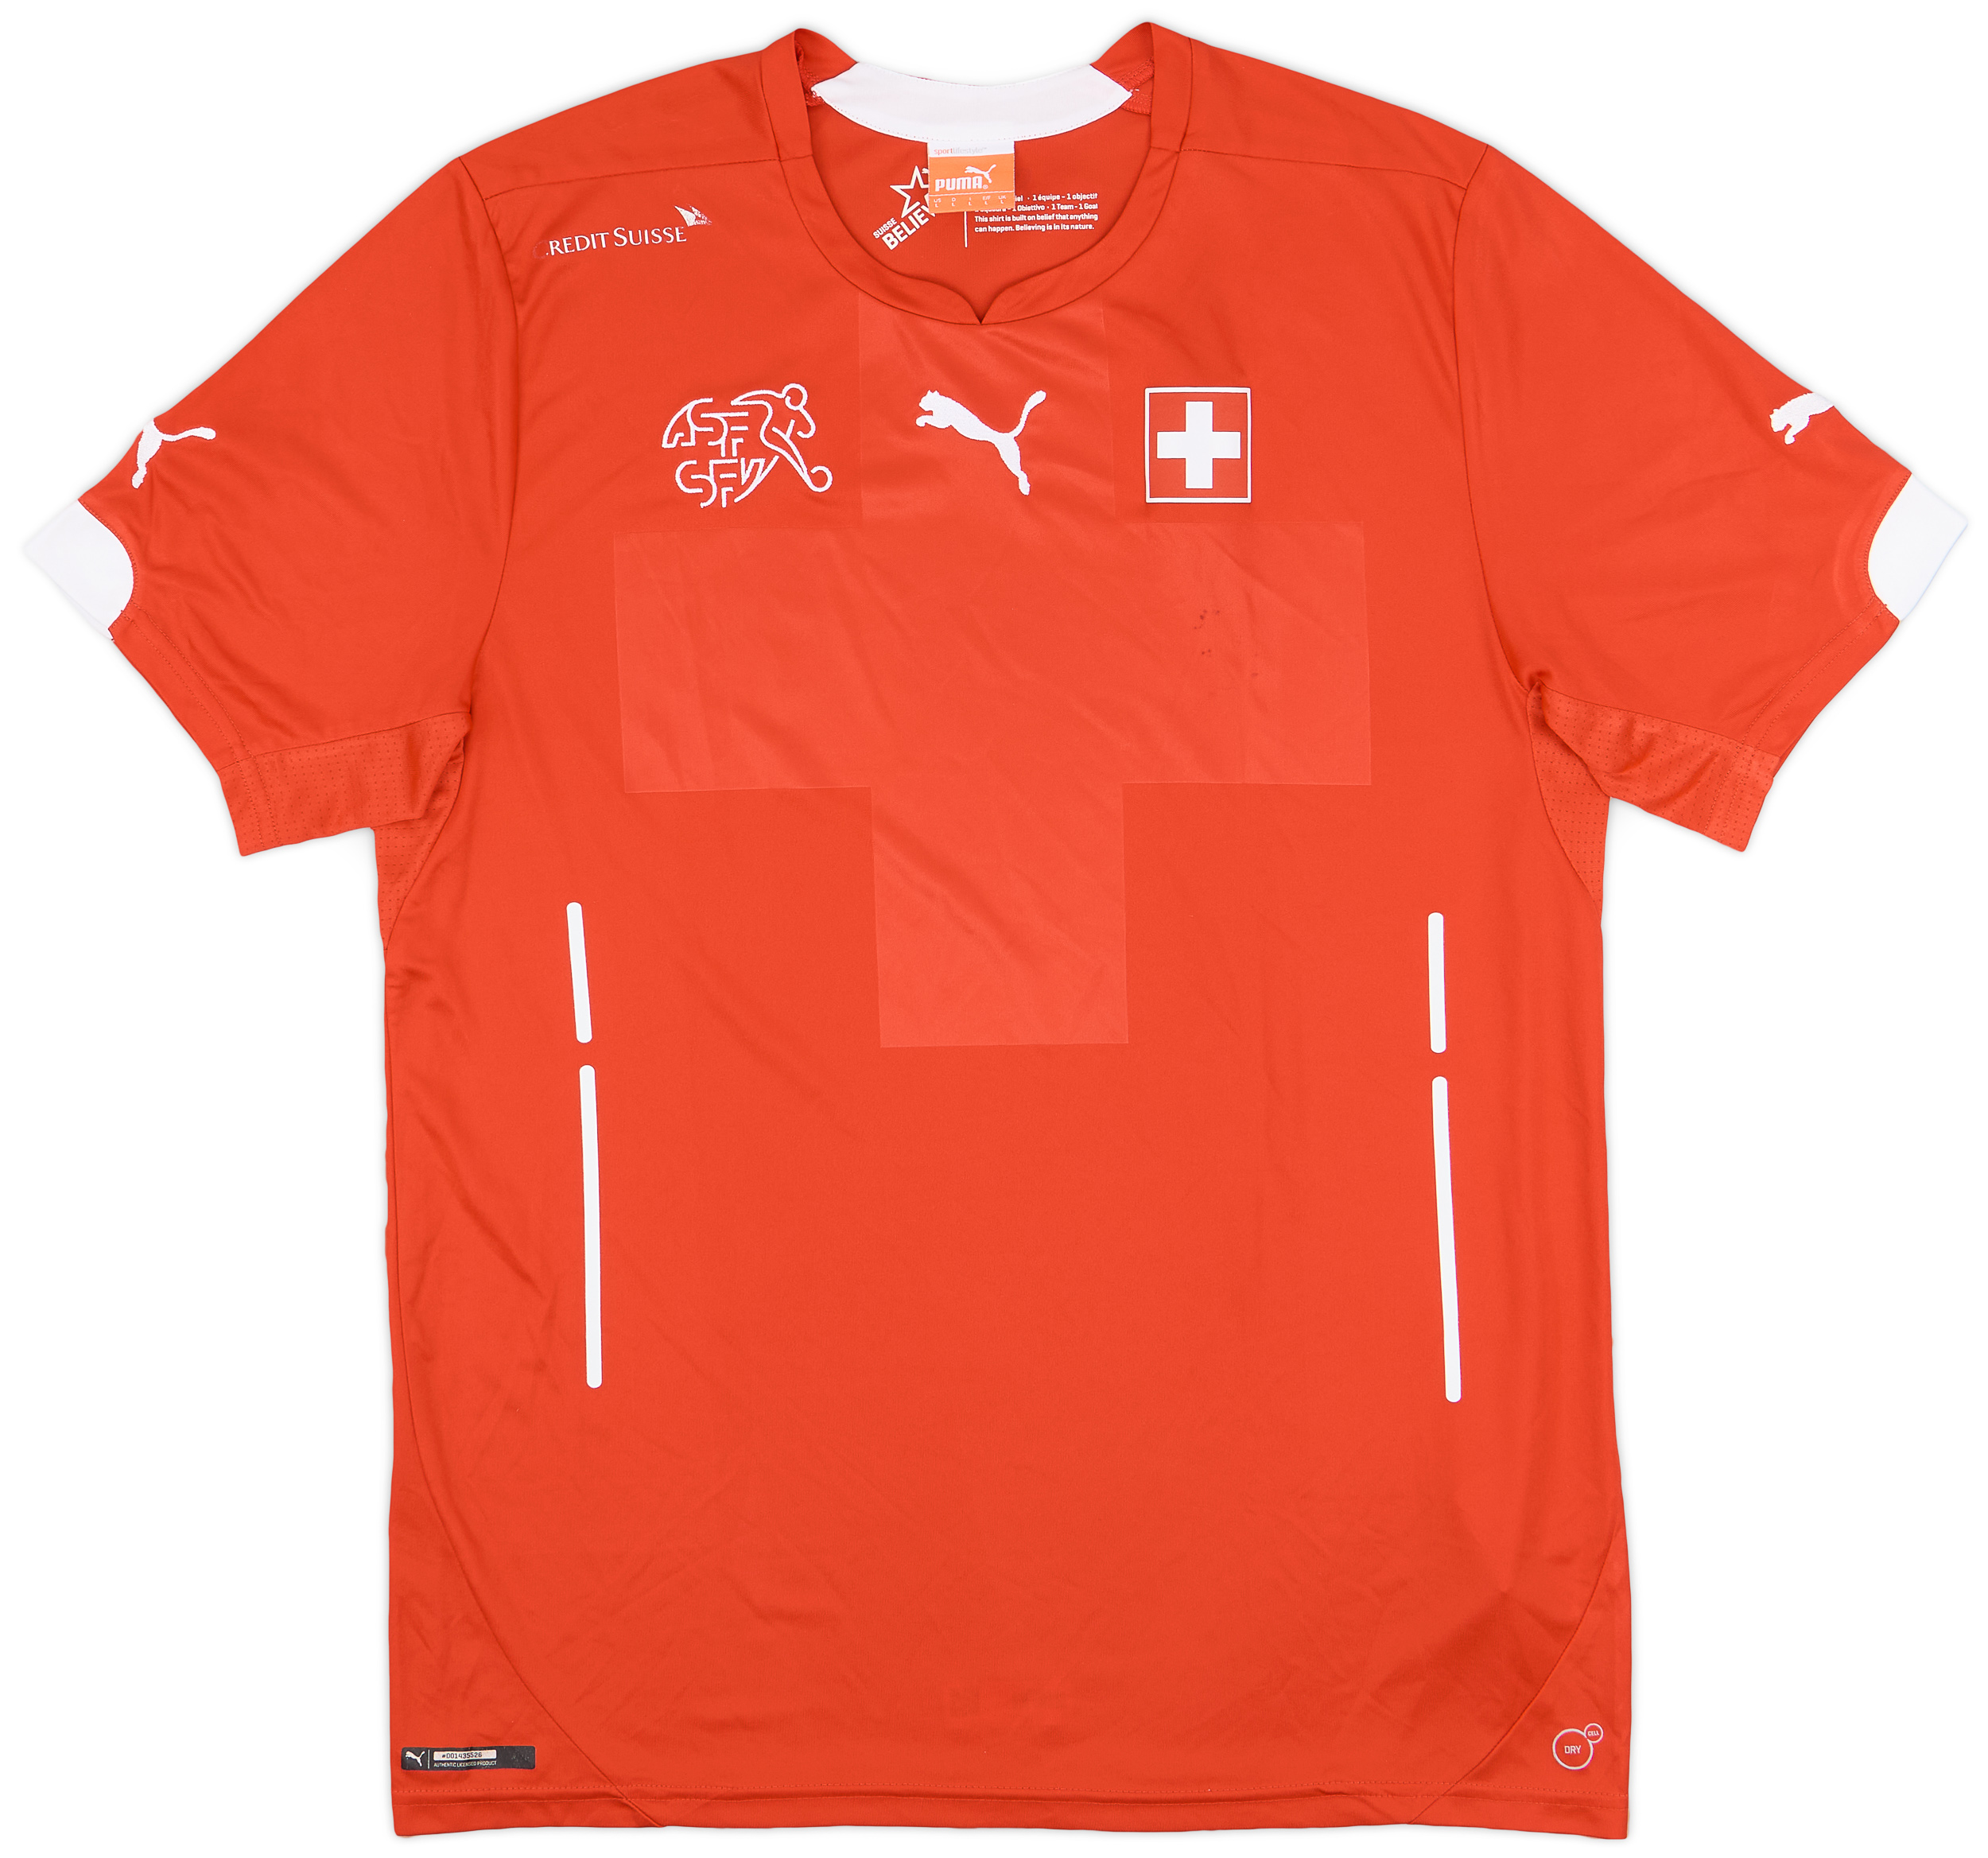 2014-15 Switzerland Home Shirt - 8/10 - ()